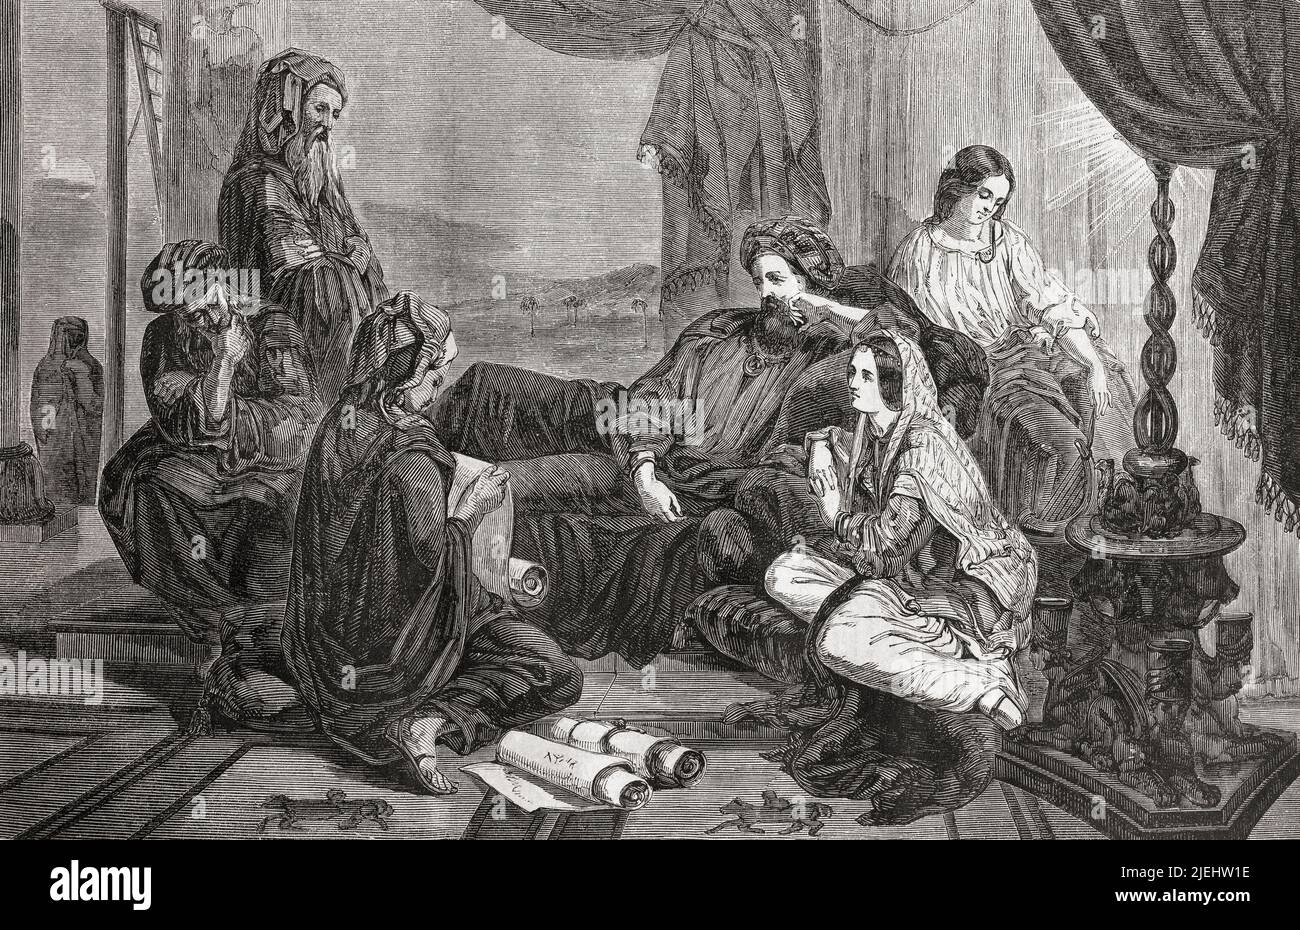 Ahasueres hört sich die Lesung der Chronik an. Aus L'Univers Illustre, Paris, 1859 Stockfoto